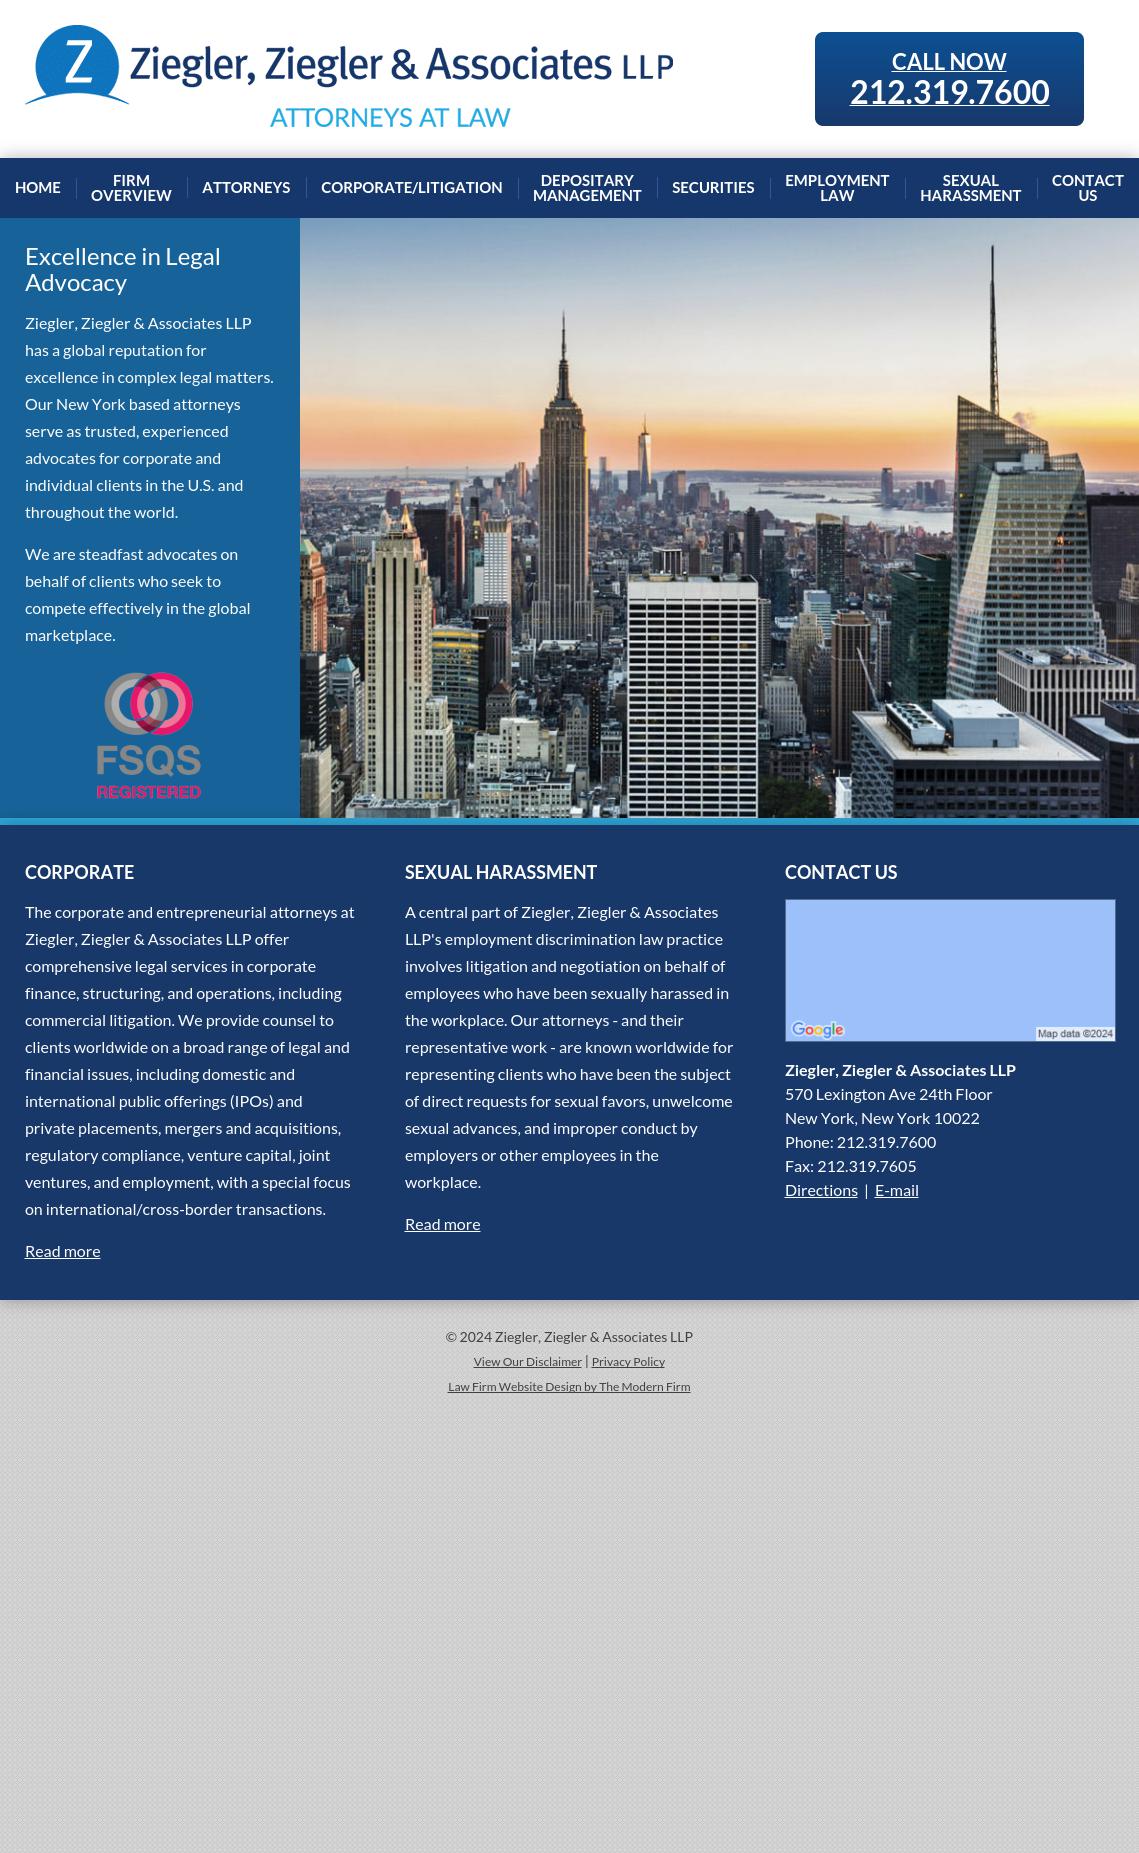 Ziegler, Ziegler & Associates LLP - New York NY Lawyers